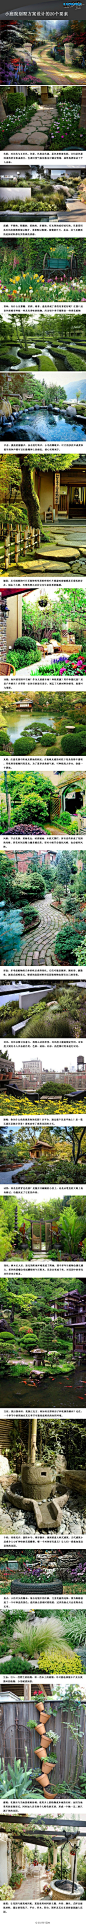 小庭院别墅方案设计的20个要素@設計物語LAI @ATENO天诺国际 http://t.cn/8sSF62g